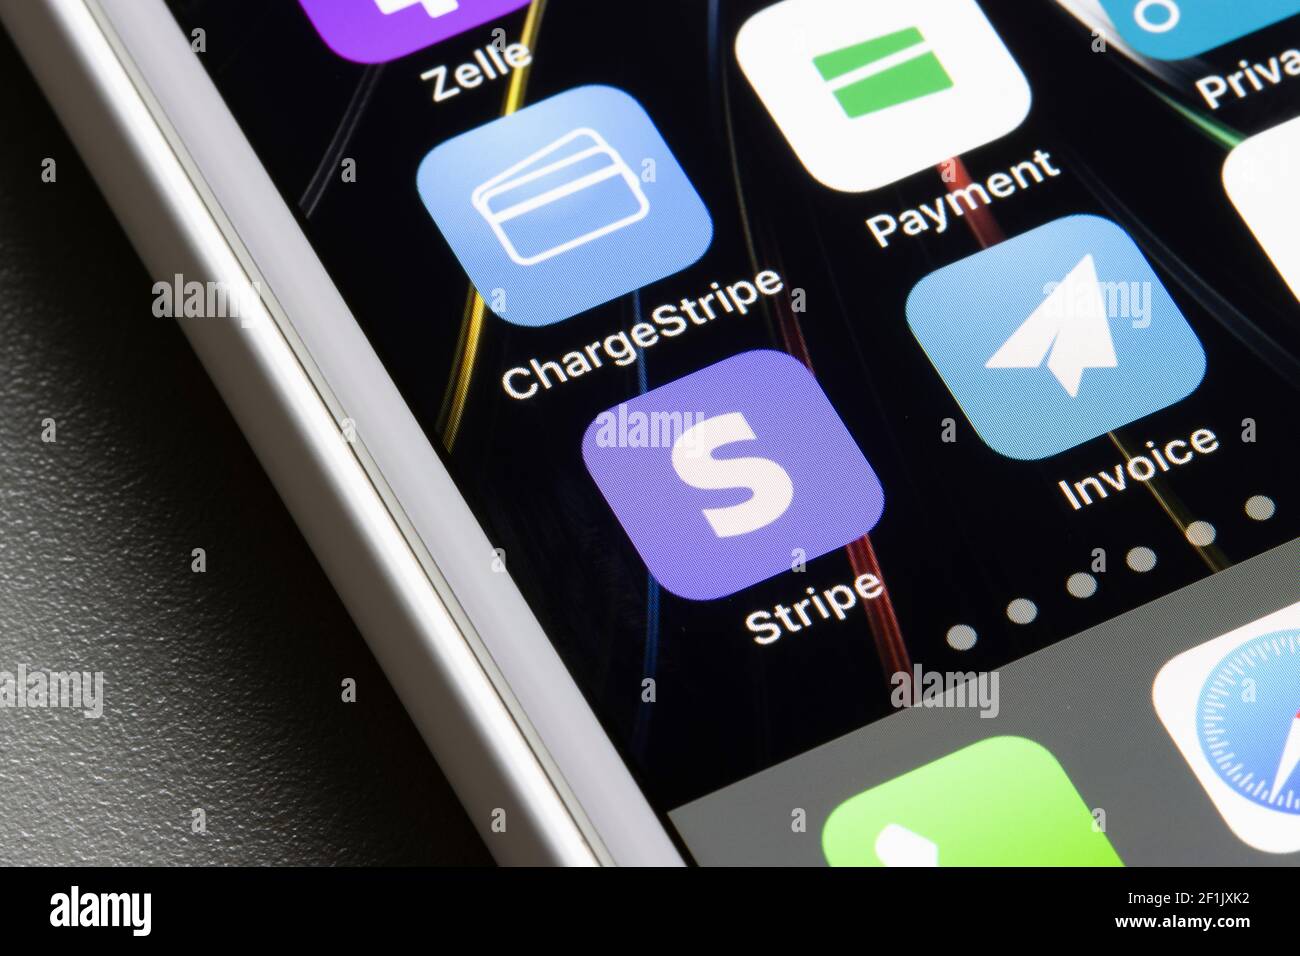 Stripe Dashboard App und drei der verschiedenen Stripe Partner Apps - ChargeStripe, Stripe for Payment, Invoice for Stripe - sind auf einem iPhone zu sehen. Stockfoto